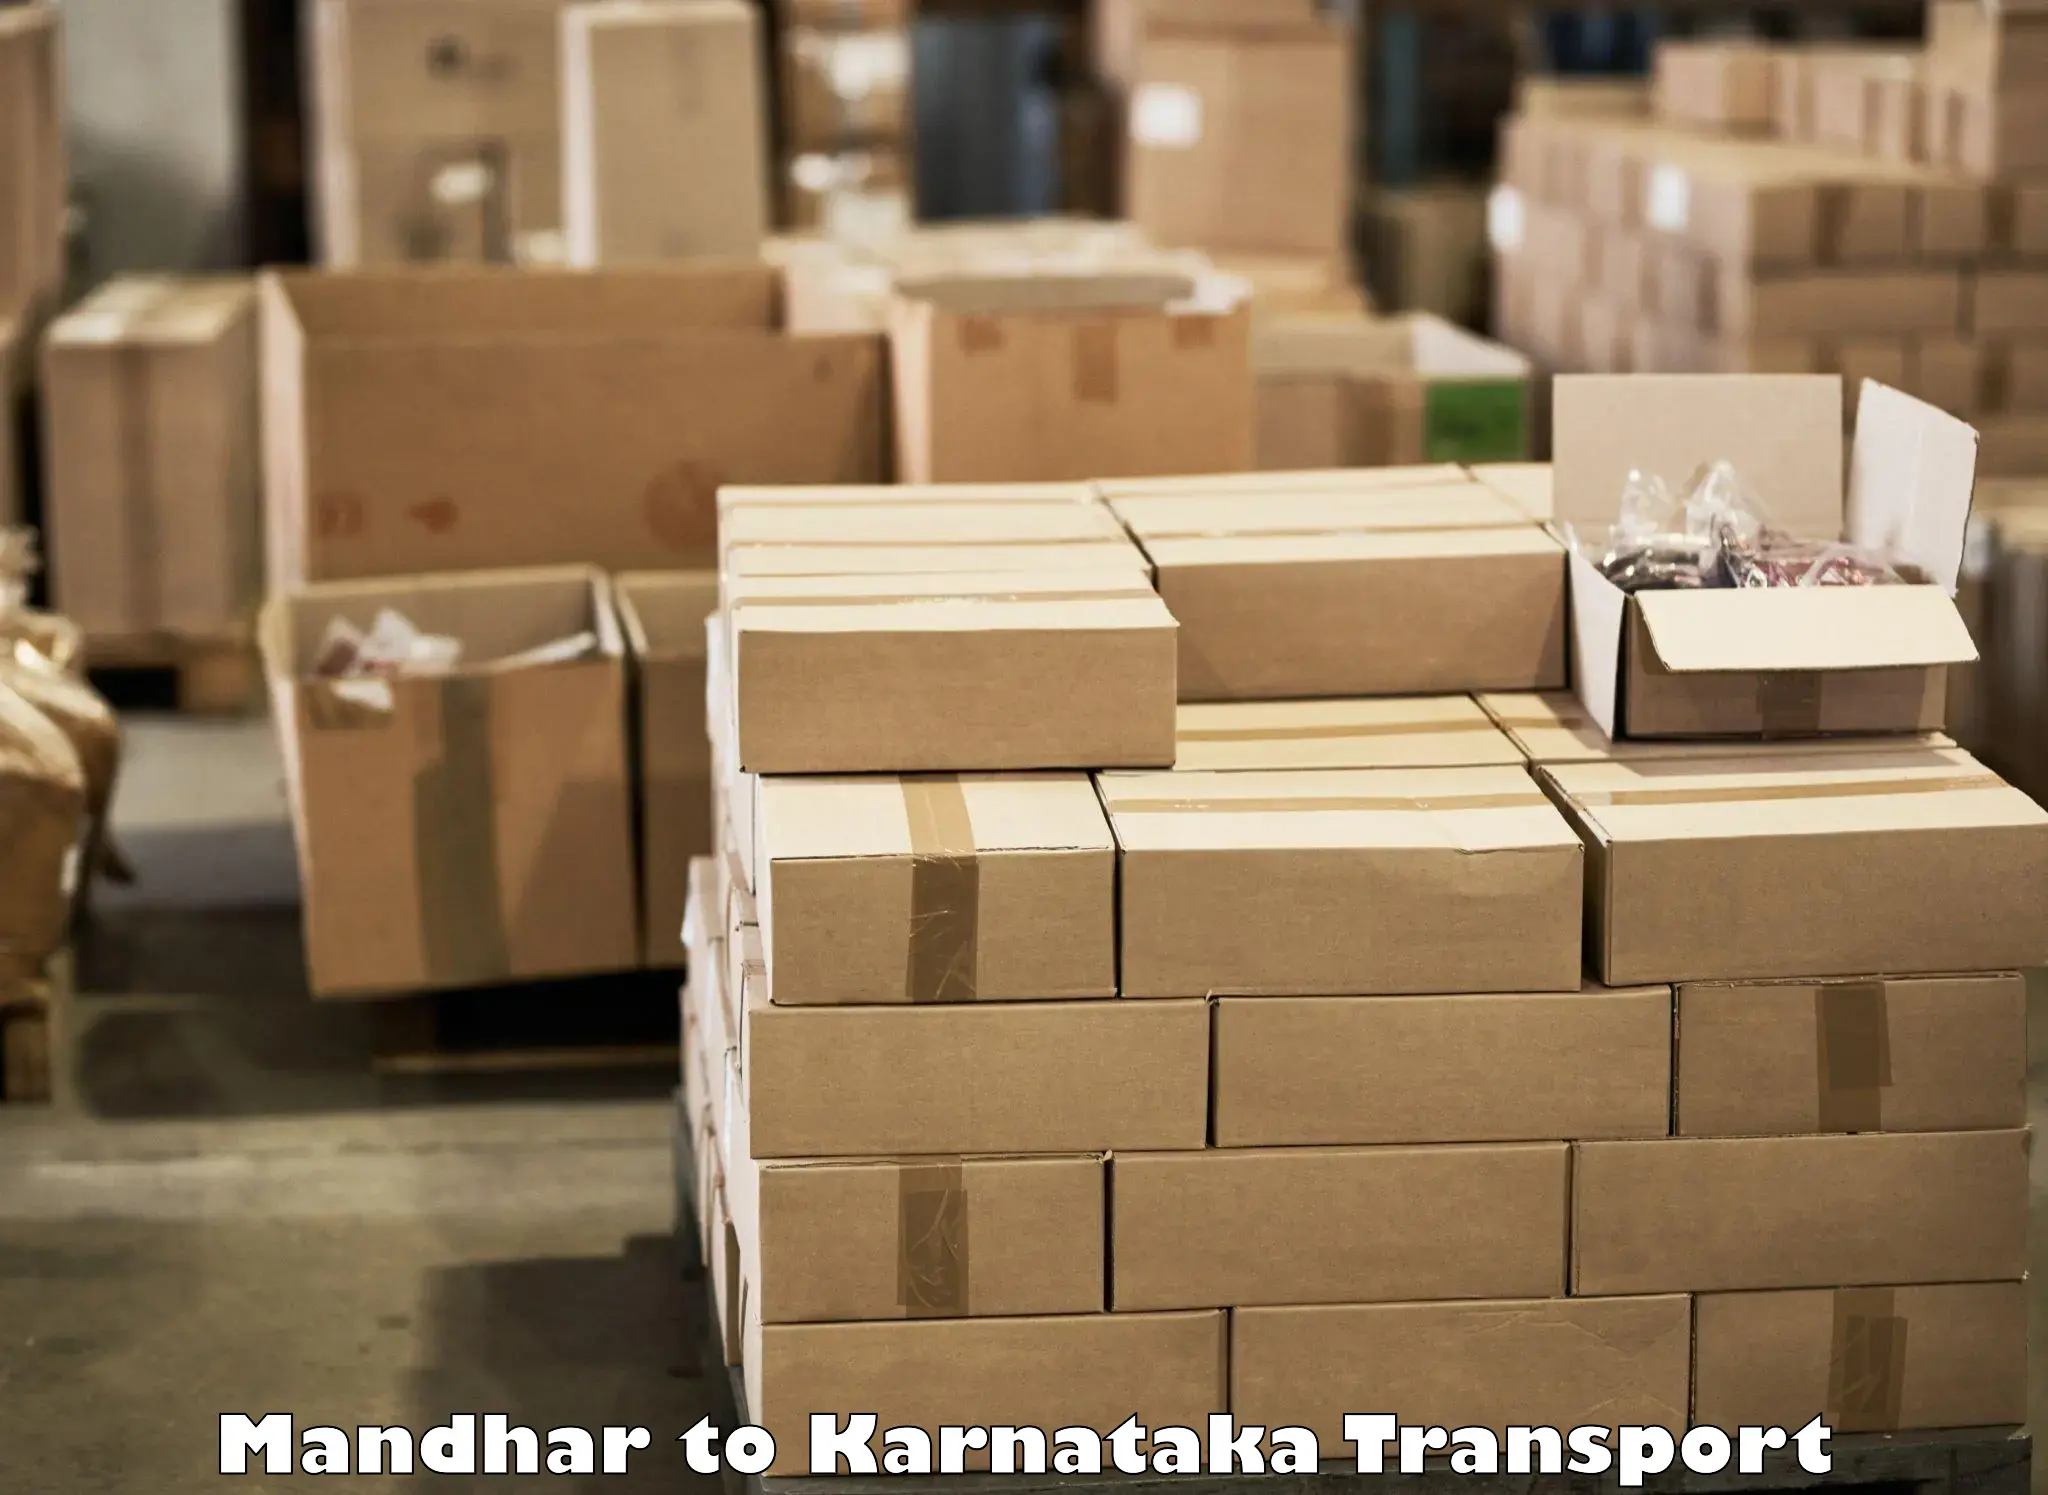 Parcel transport services Mandhar to Mundgod